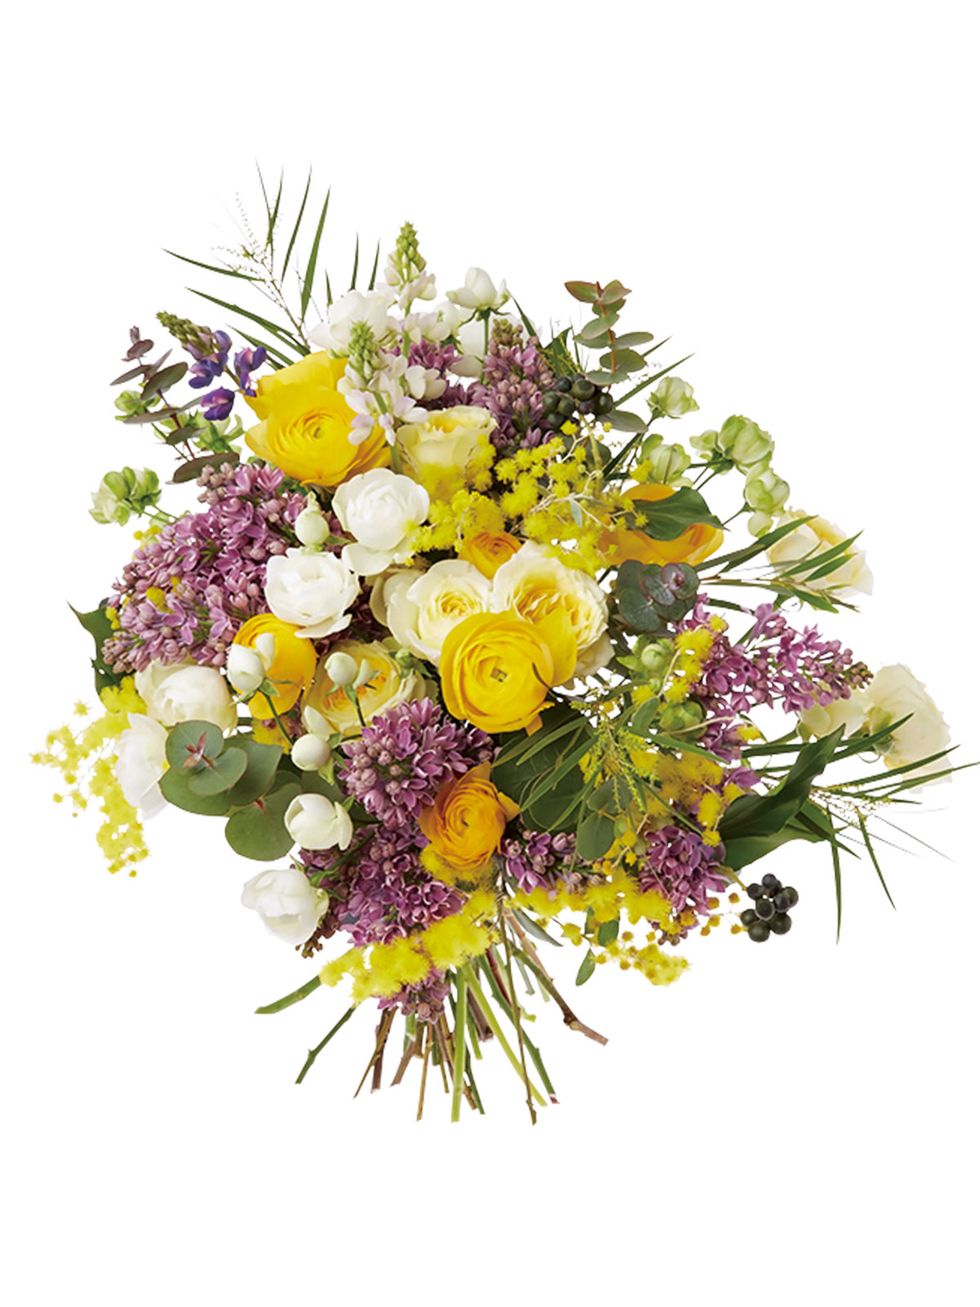 Flower, Bouquet, Petal, Purple, Cut flowers, Floristry, Lavender, Flowering plant, Flower Arranging, Violet, 